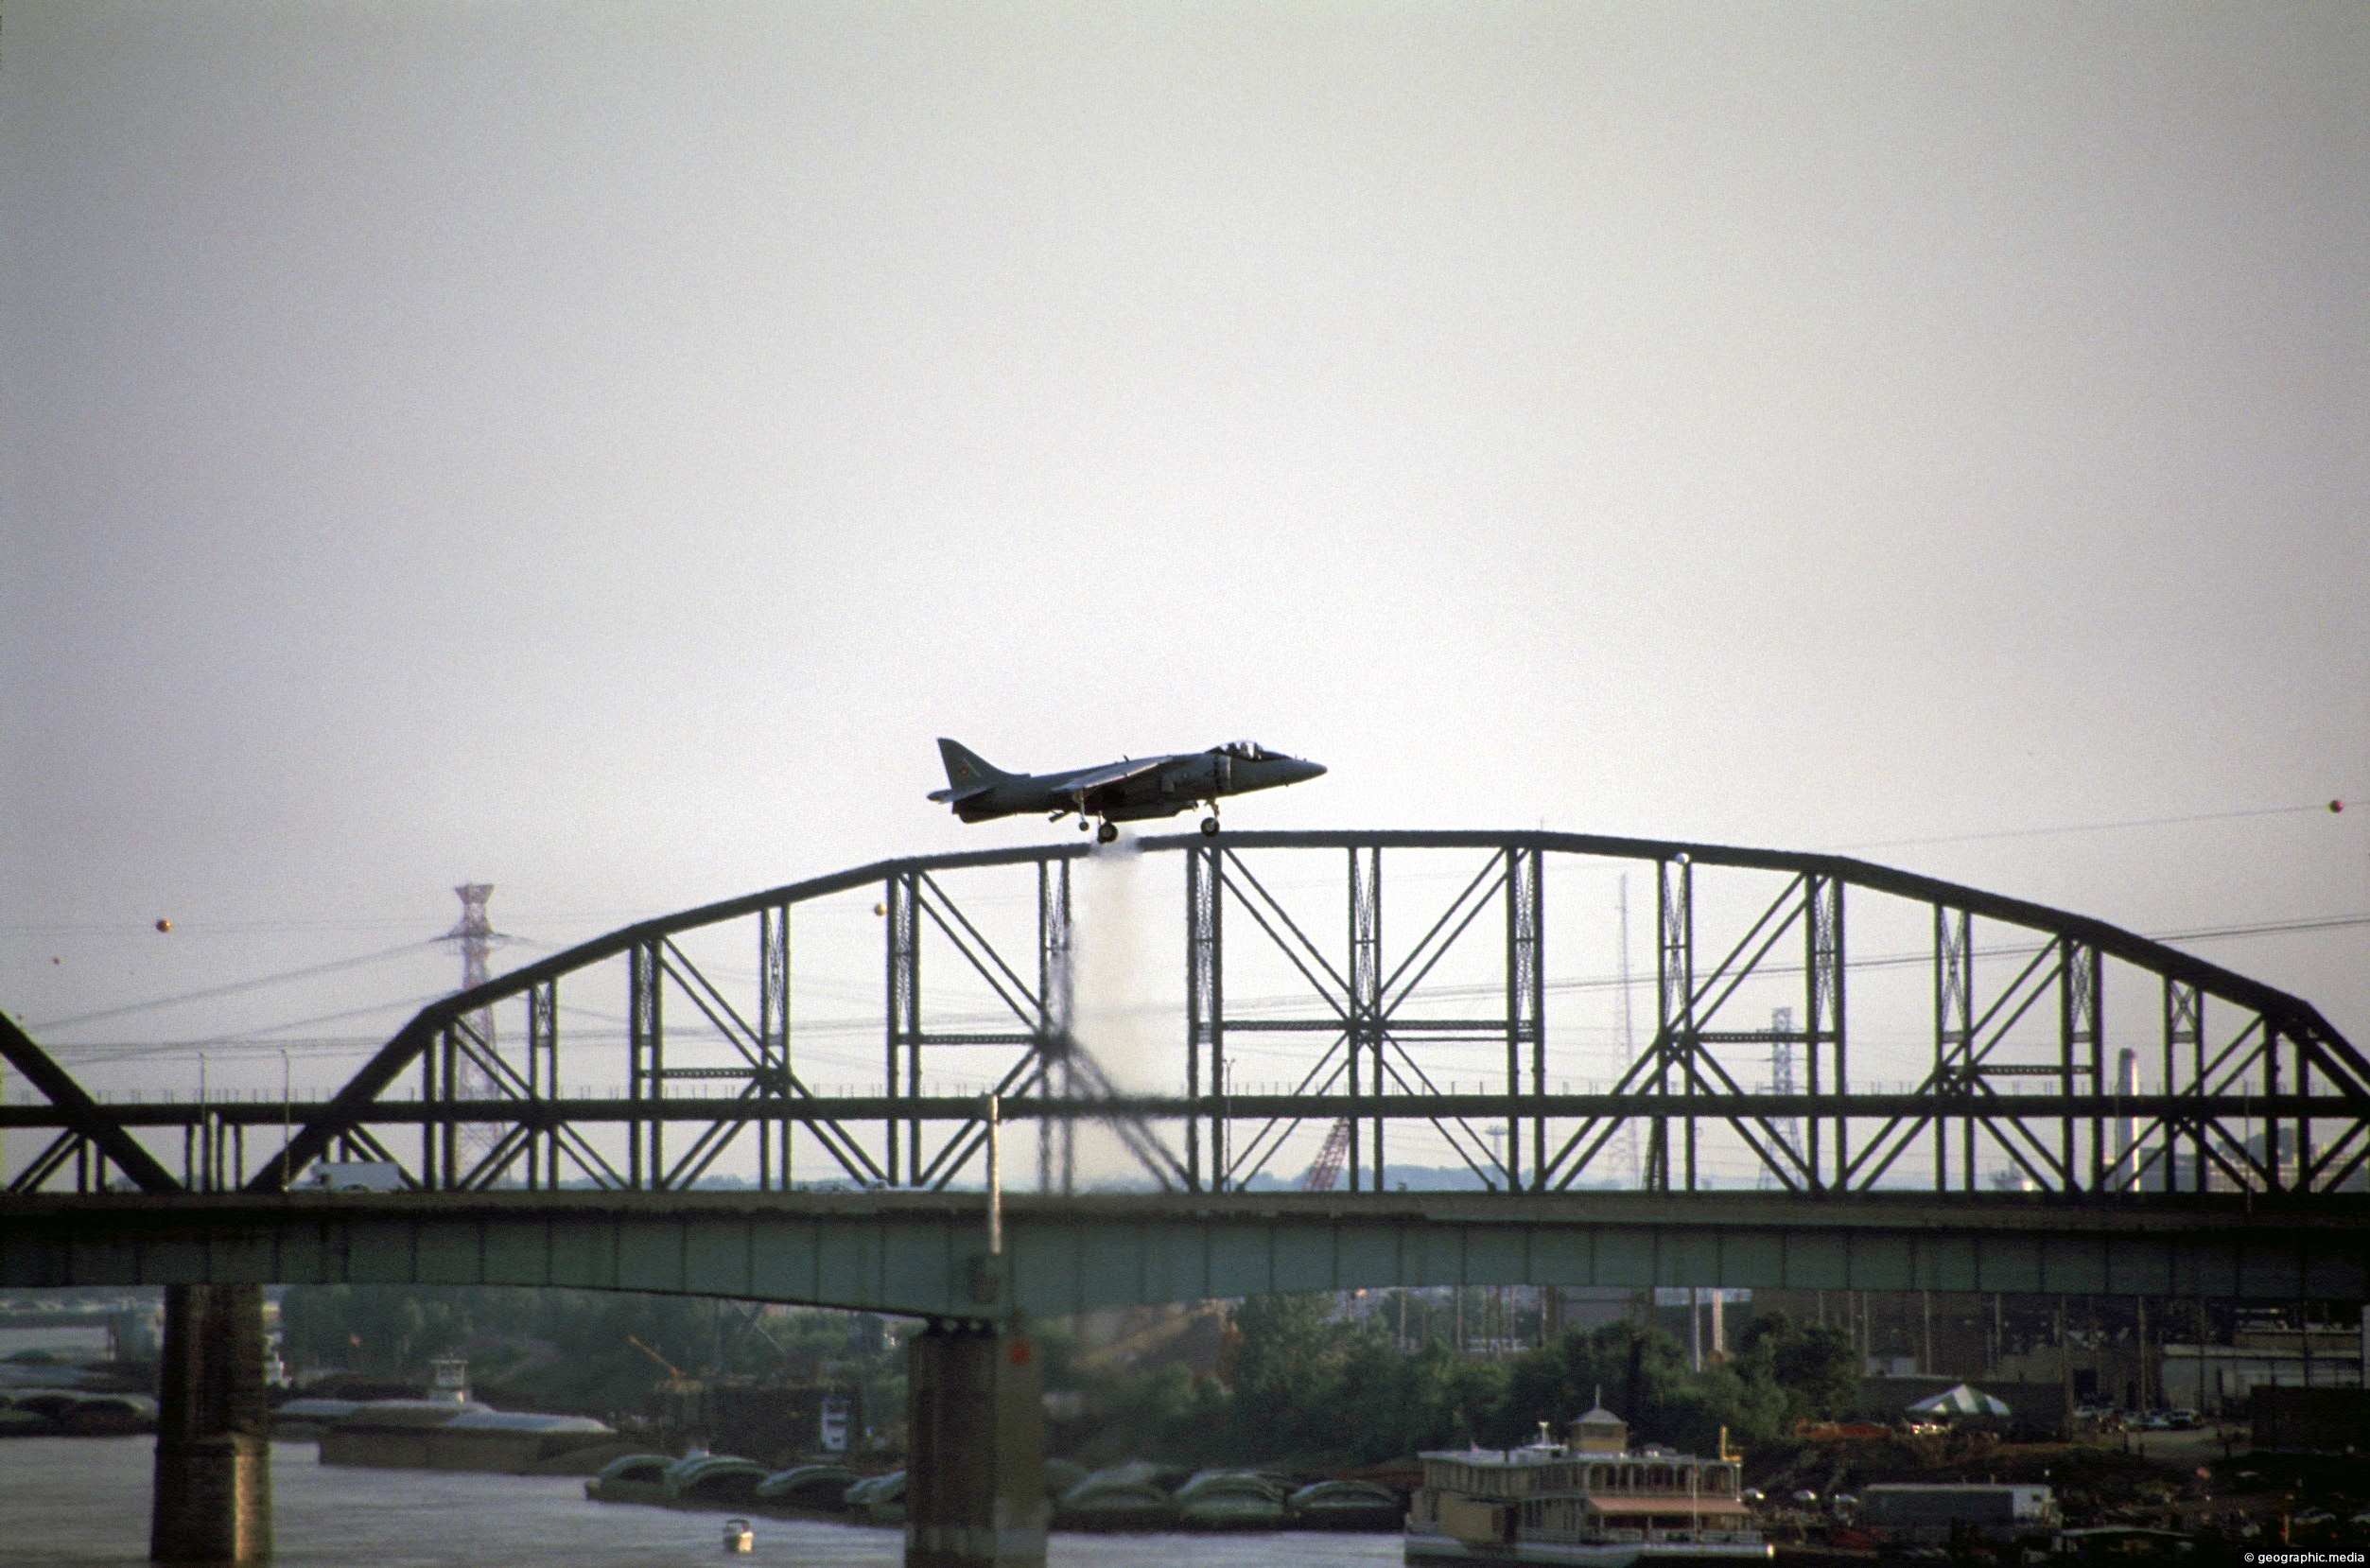 Plane on a rail bridge in St Louis